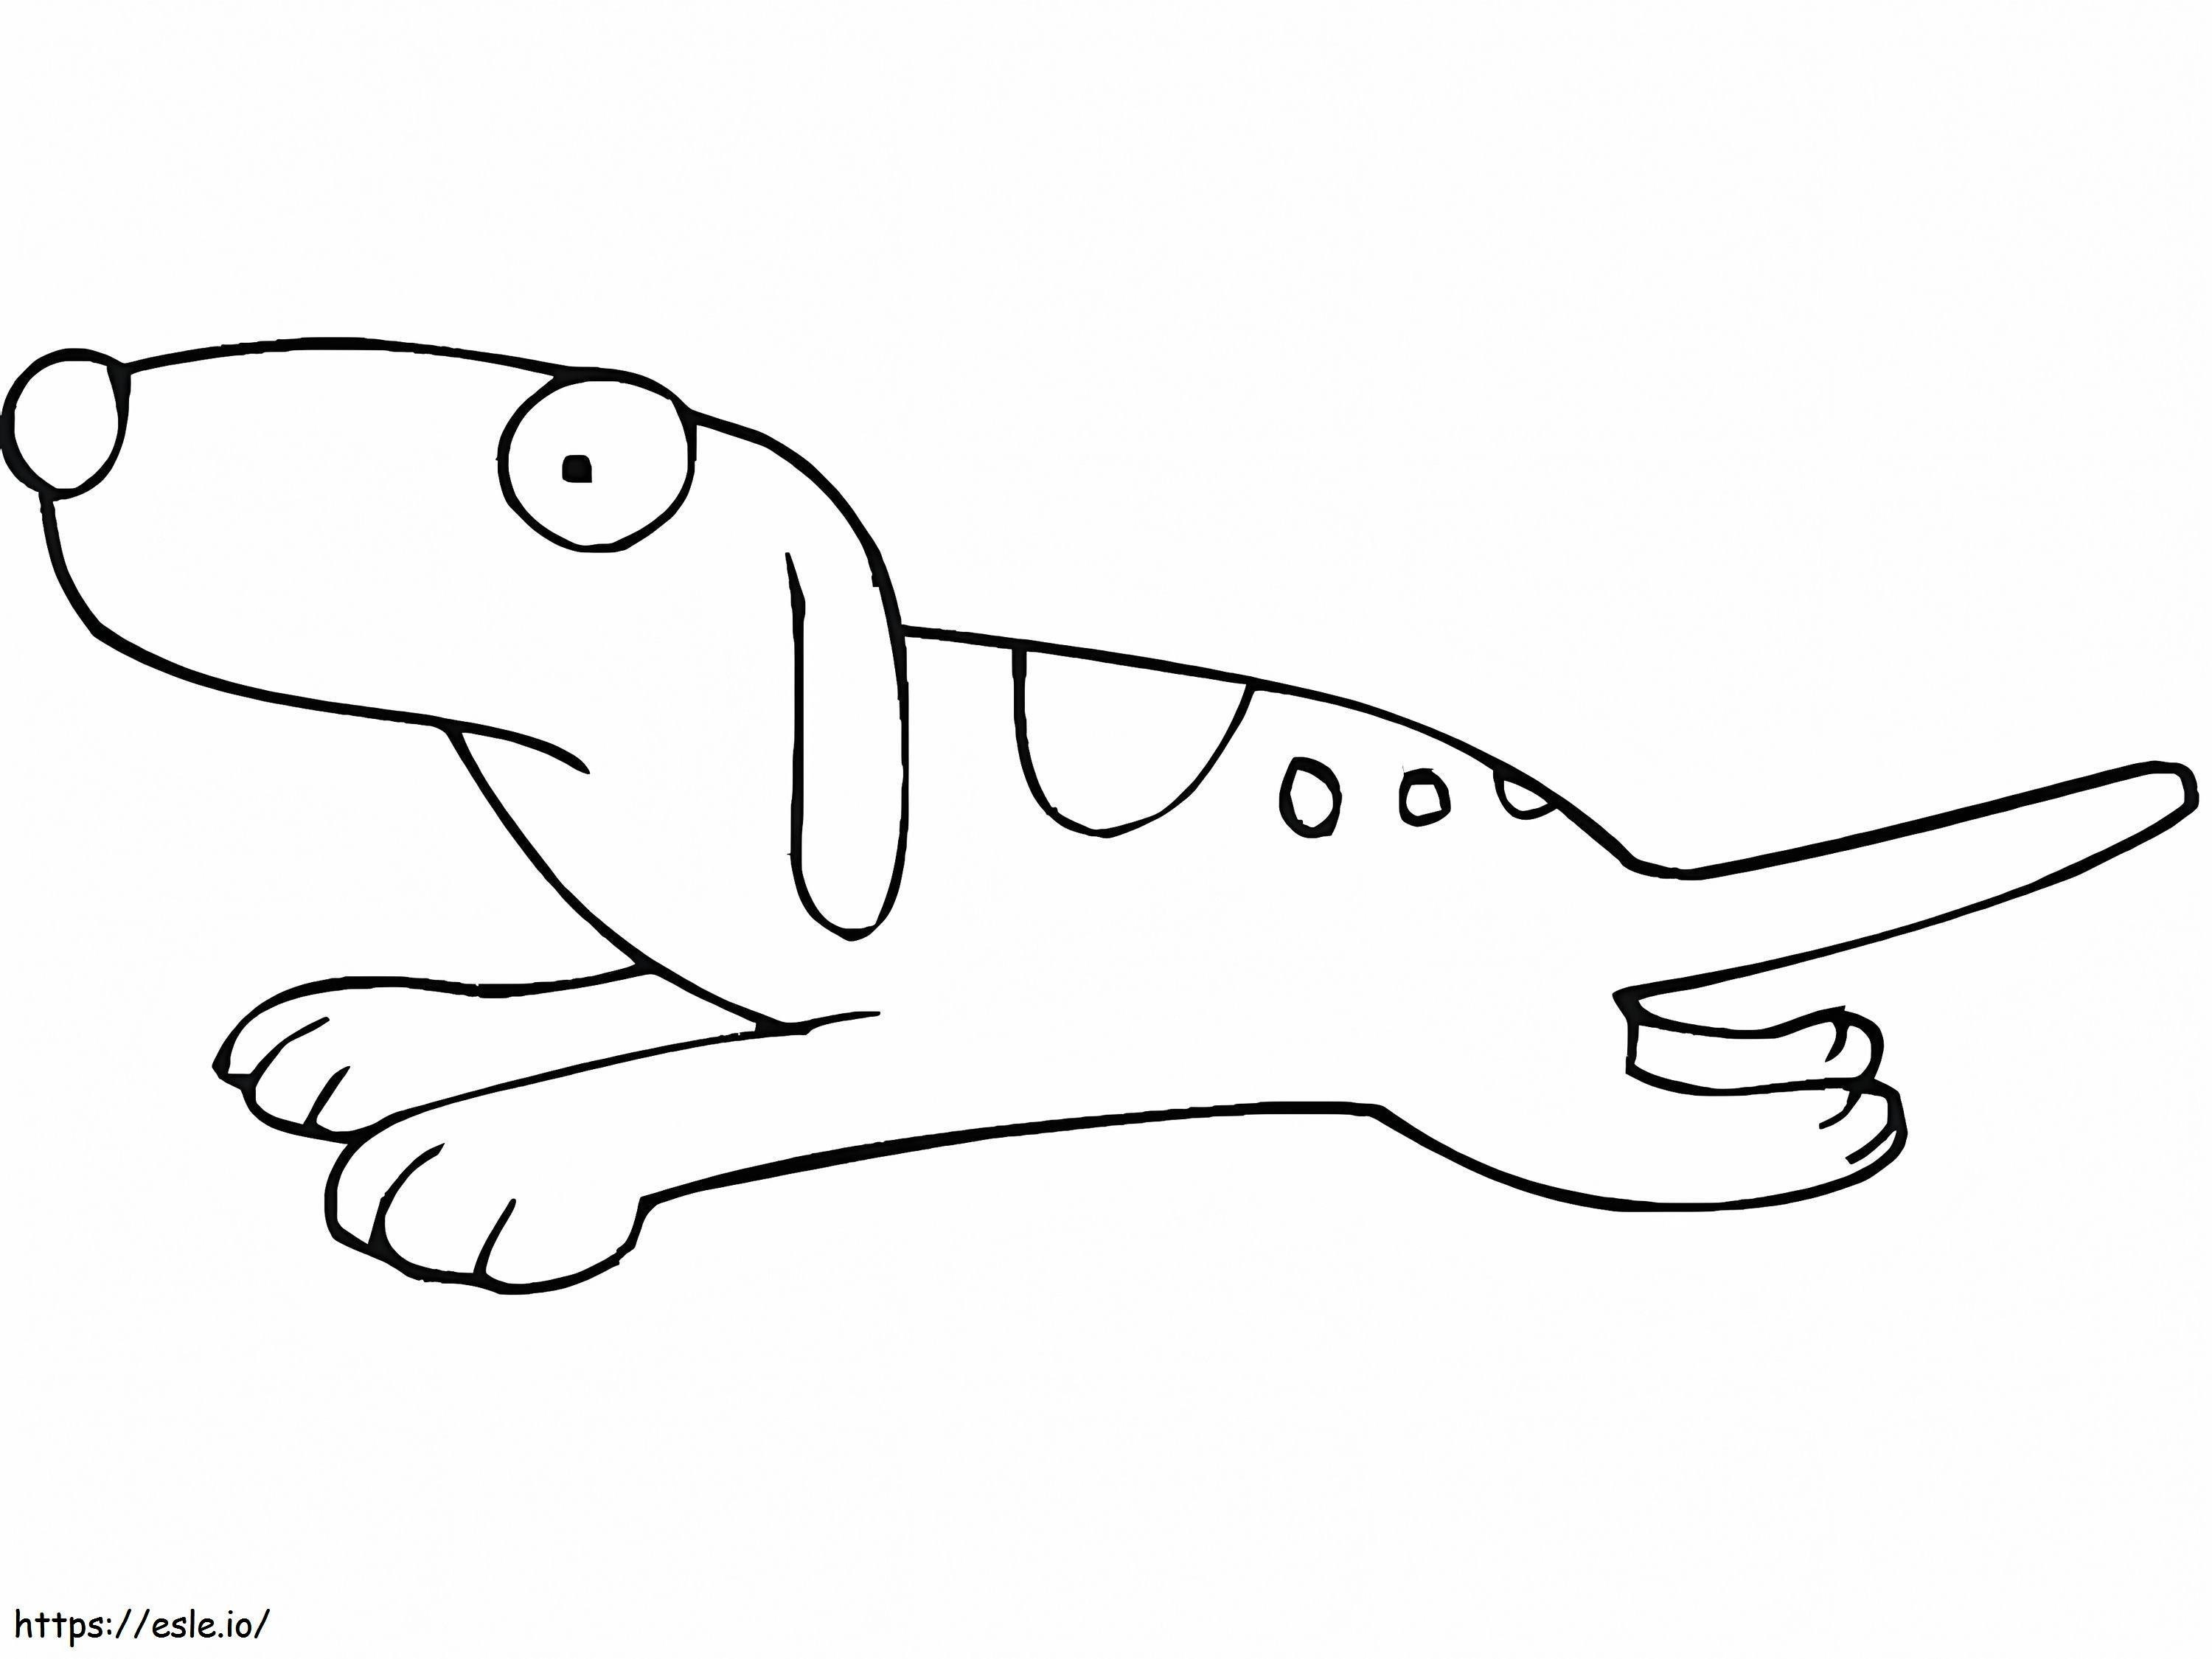 Caricatura de un perro en movimiento para colorear